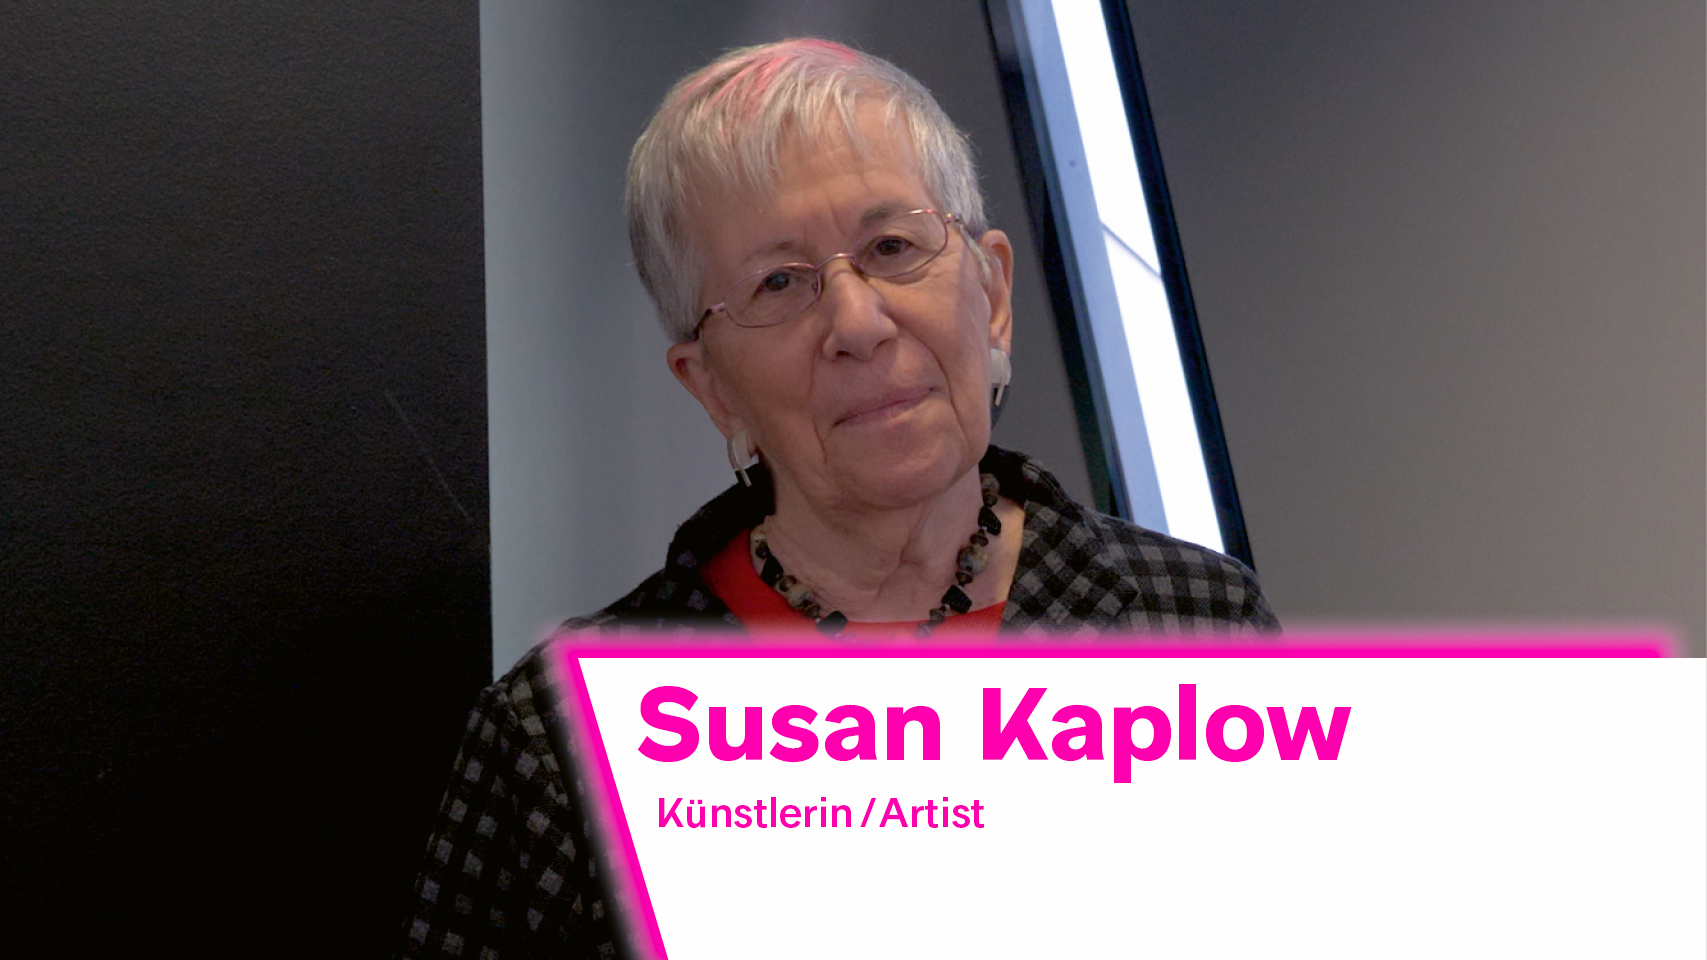 The image shows a portrait of artist Susan Kaplow.